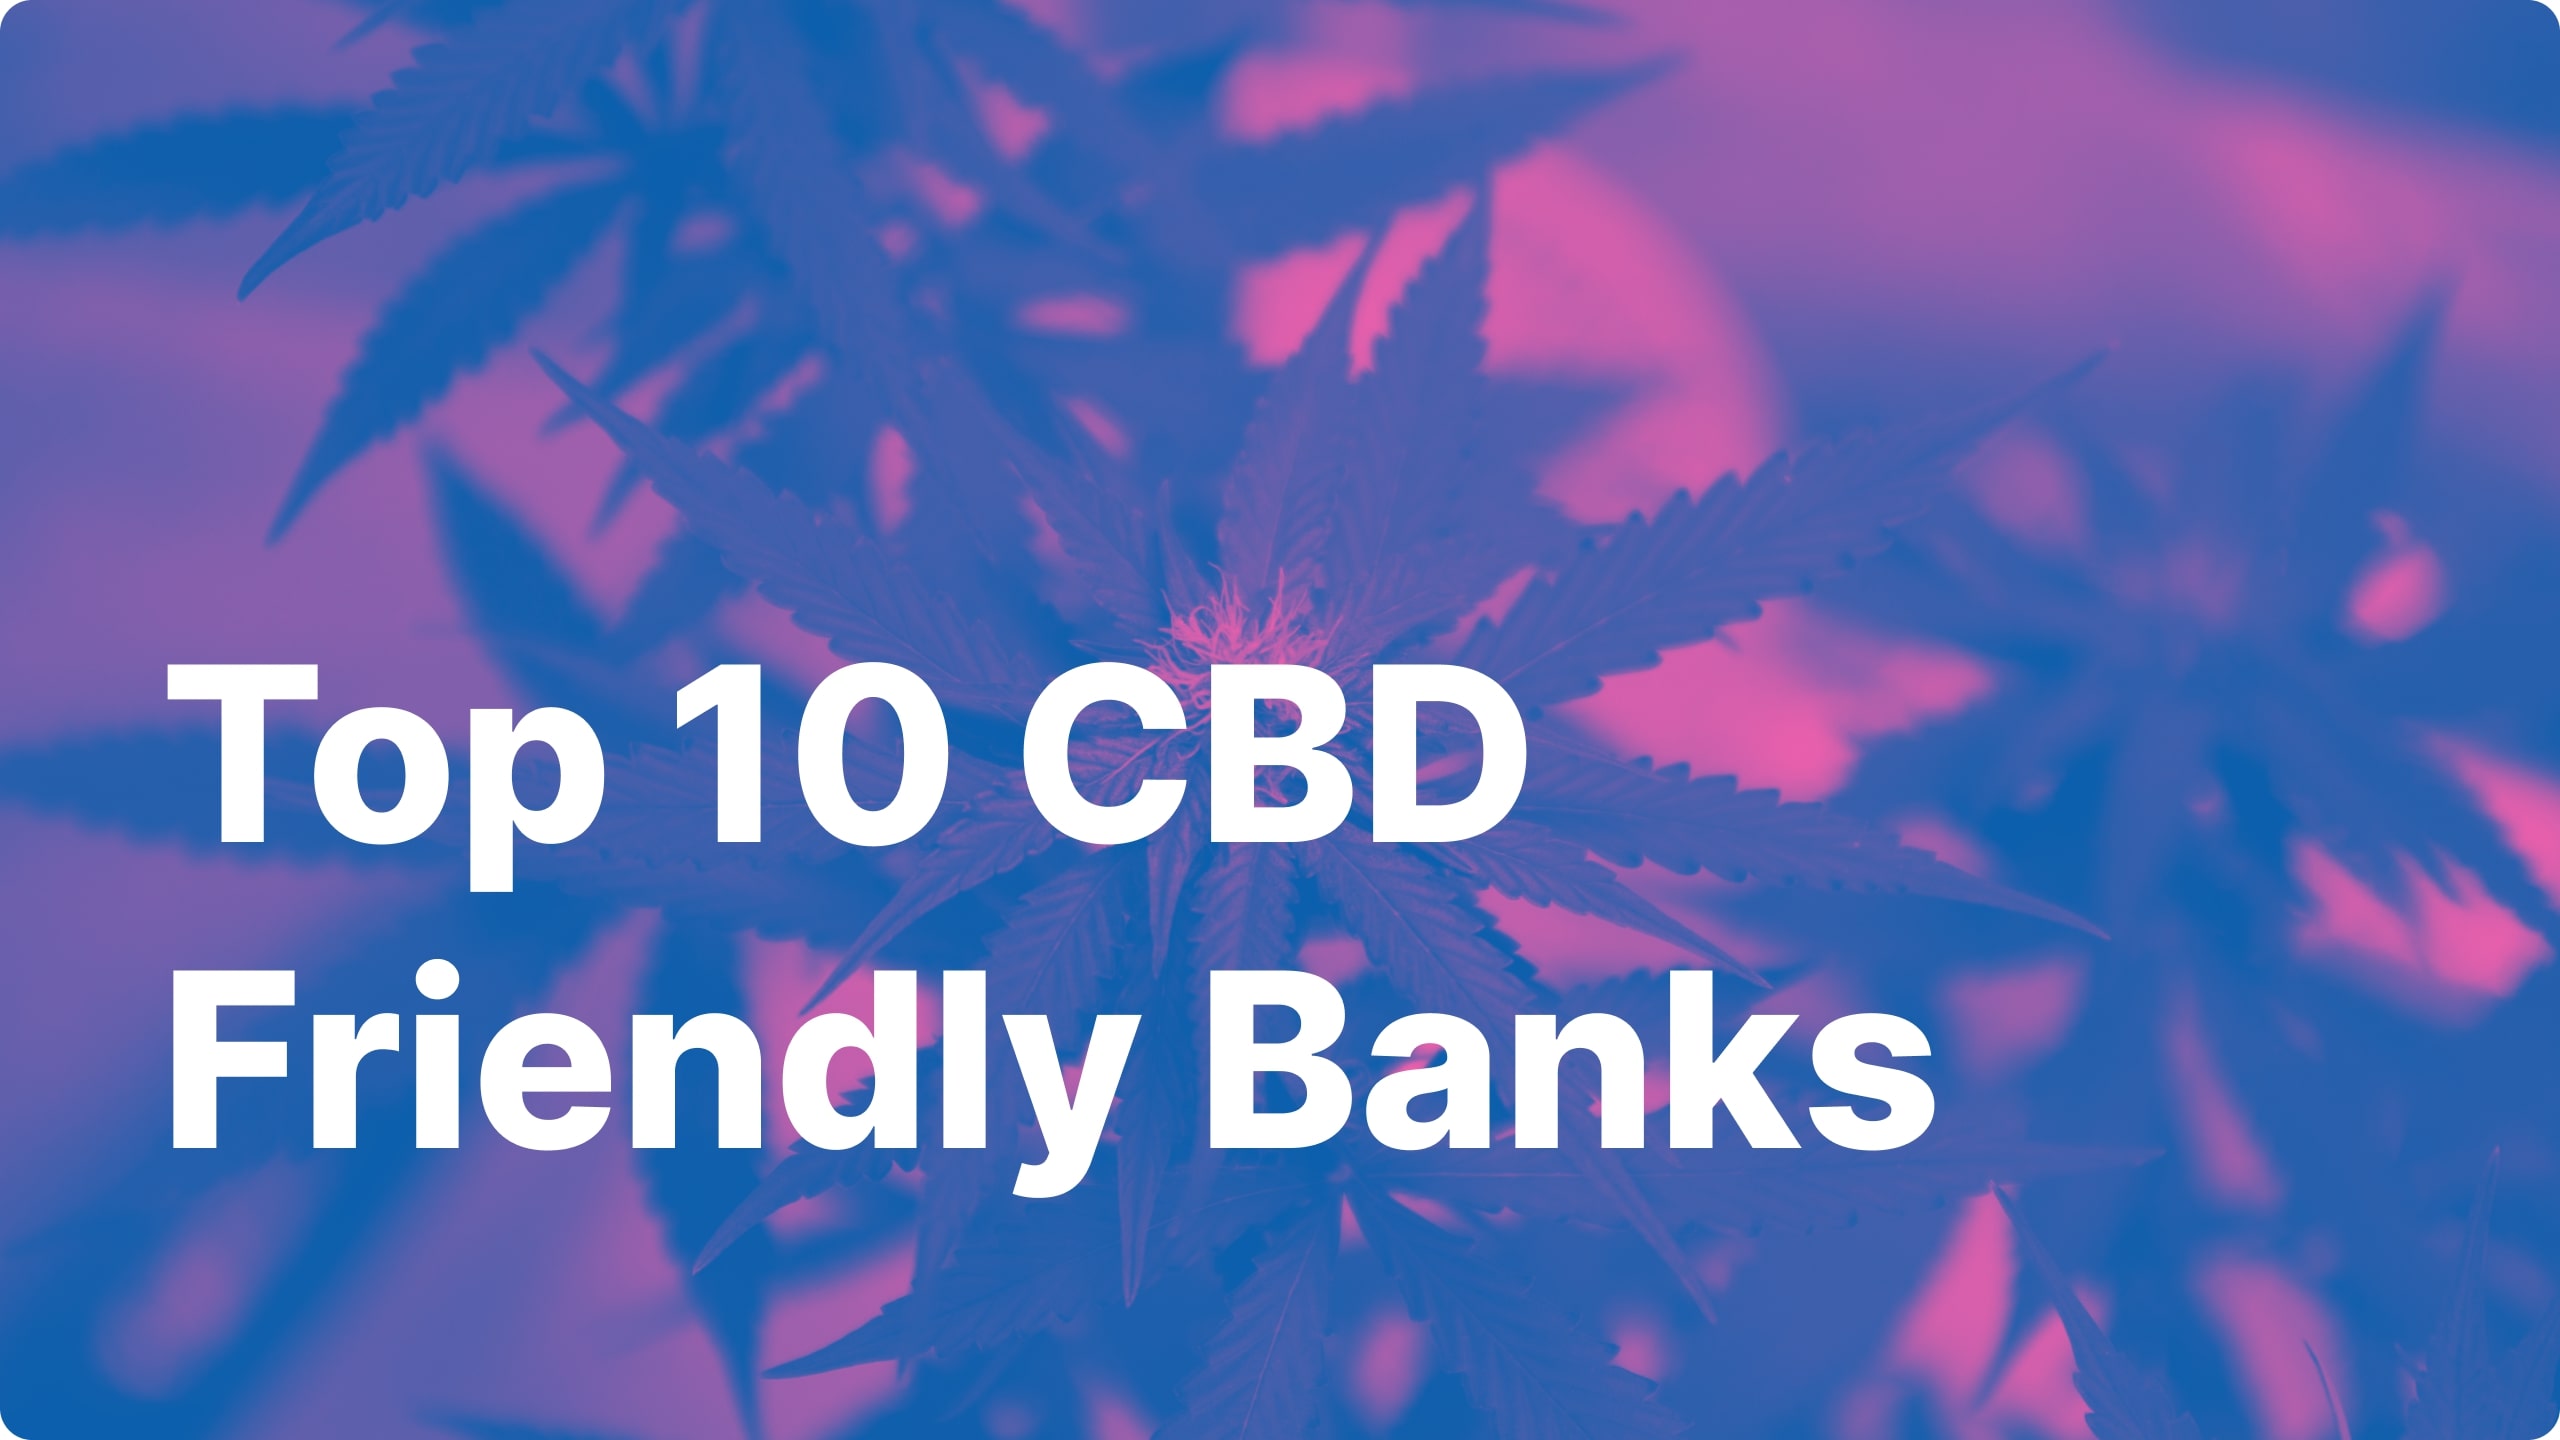 Top 10 CBD Friendly Banks